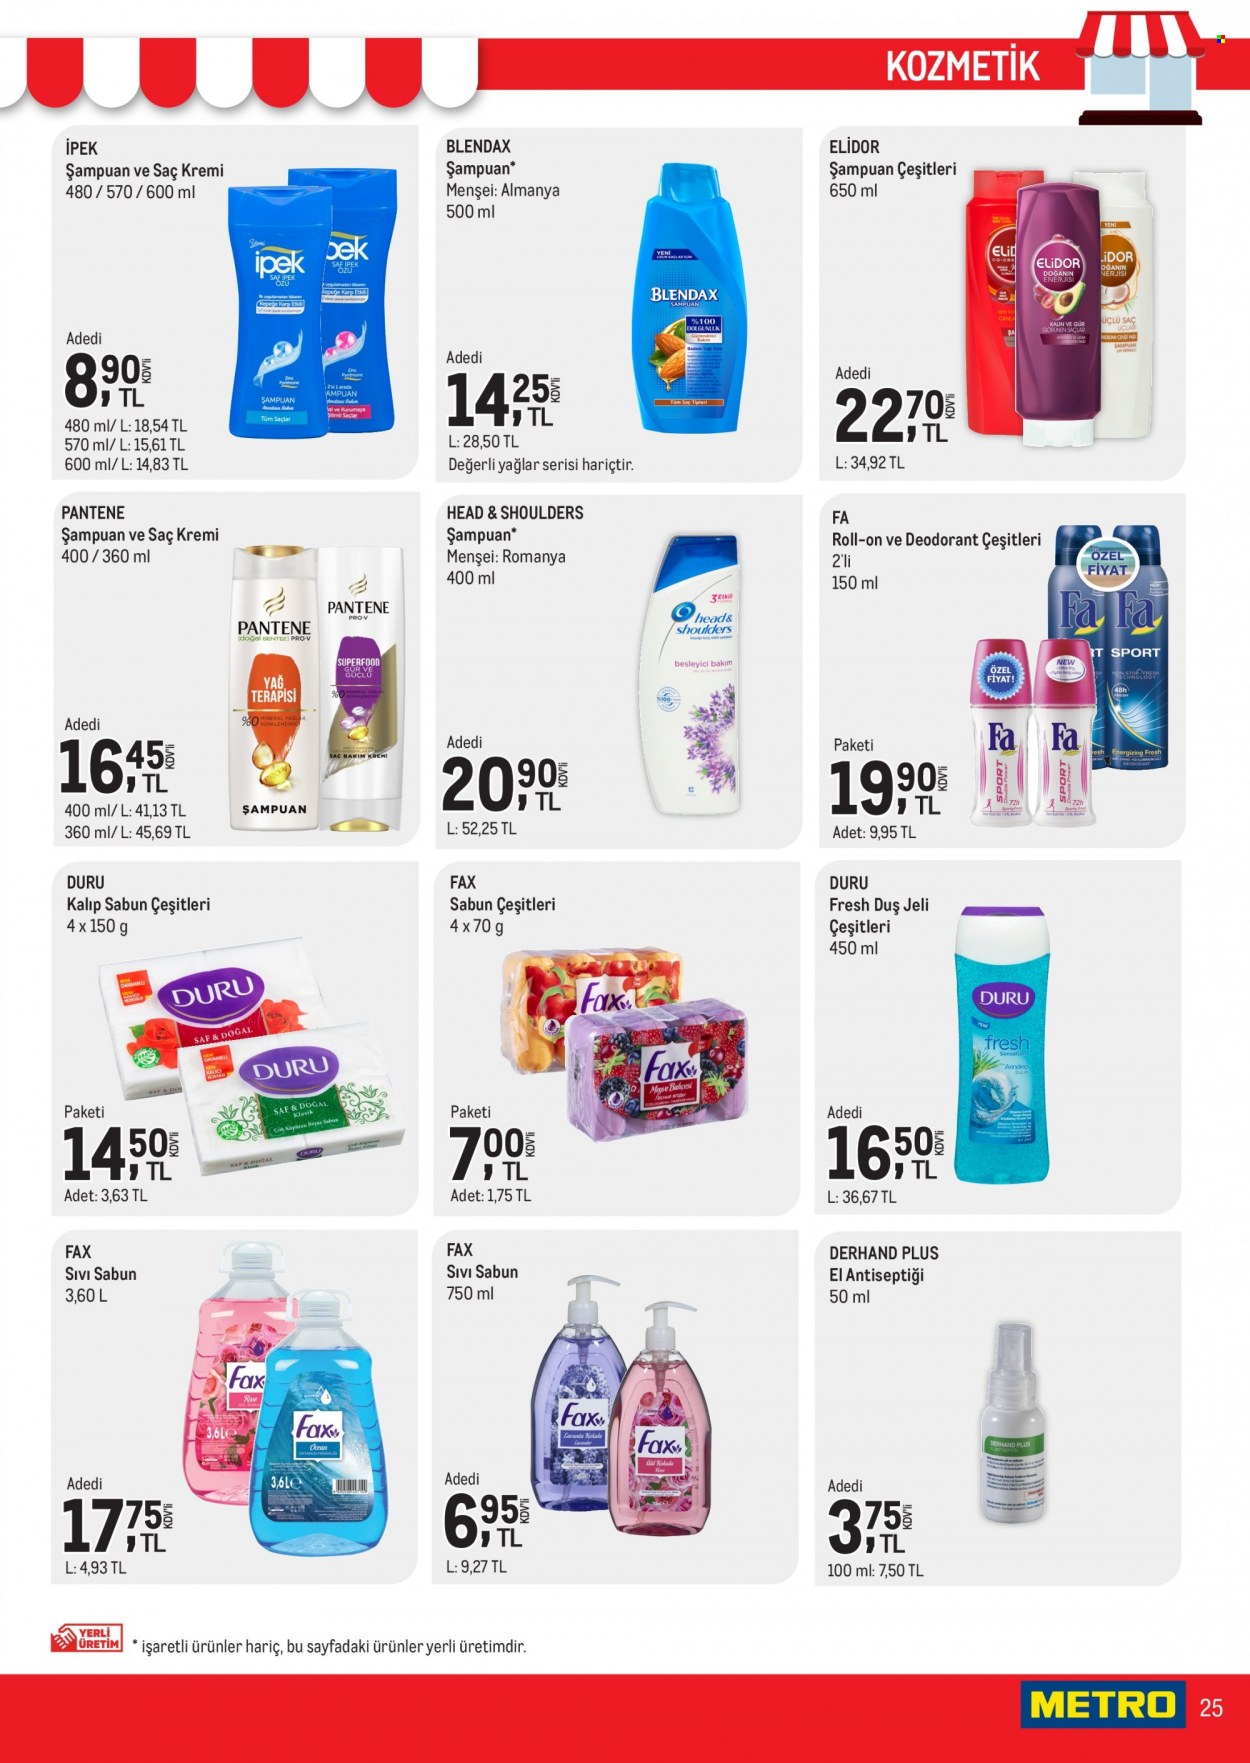 thumbnail - Metro aktüel ürünler, broşür  - 11.16.2021 - 11.30.2021 - Satıştaki ürünler - sabun, şampuan, sıvı sabunu, Head & Shoulders, duş jeli, kremi, saç kremi, Pantene, roll-on, deodorant. Sayfa 25.